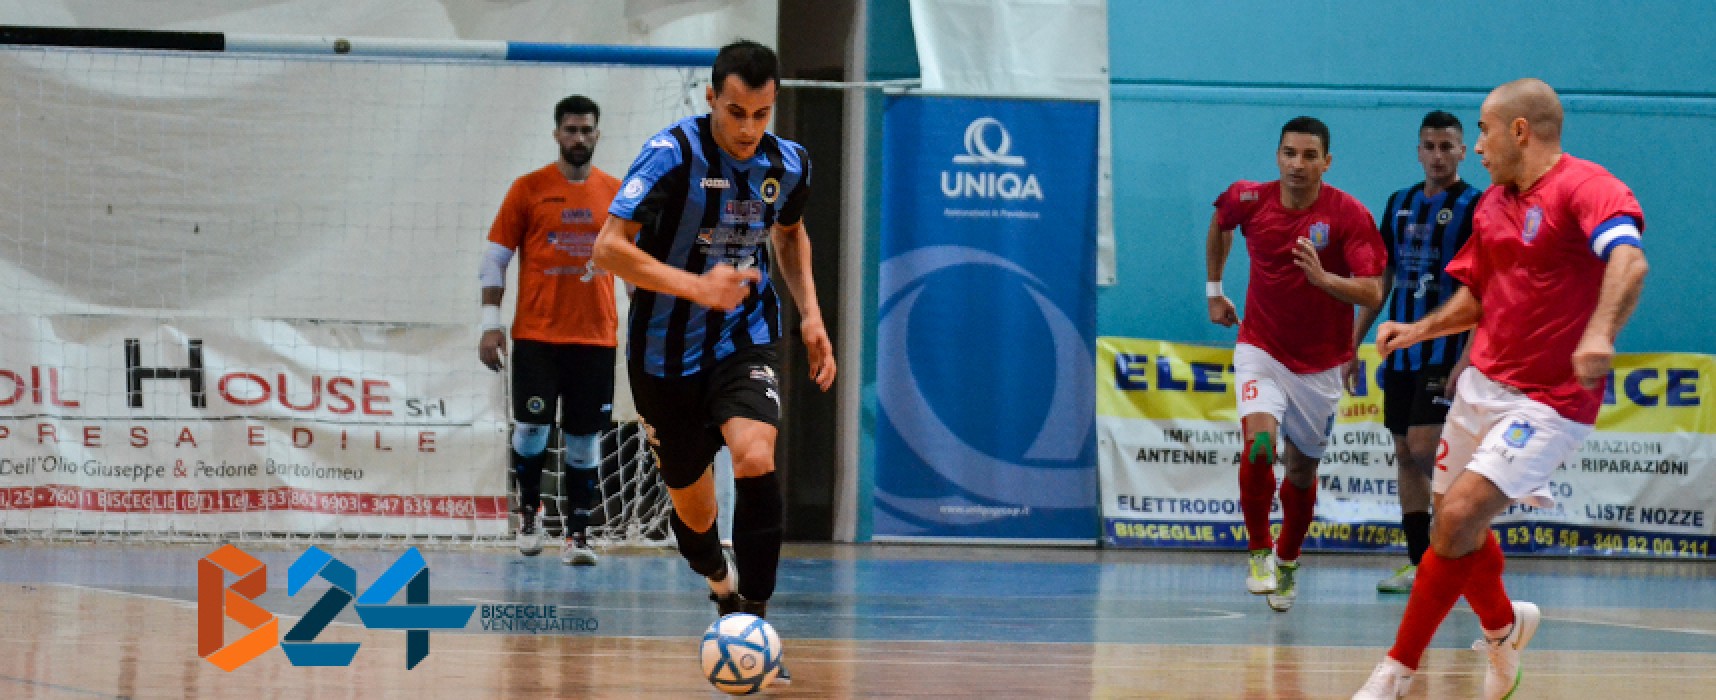 Futsal Bisceglie-Augusta 2-2 / VIDEO HIGHLIGHTS